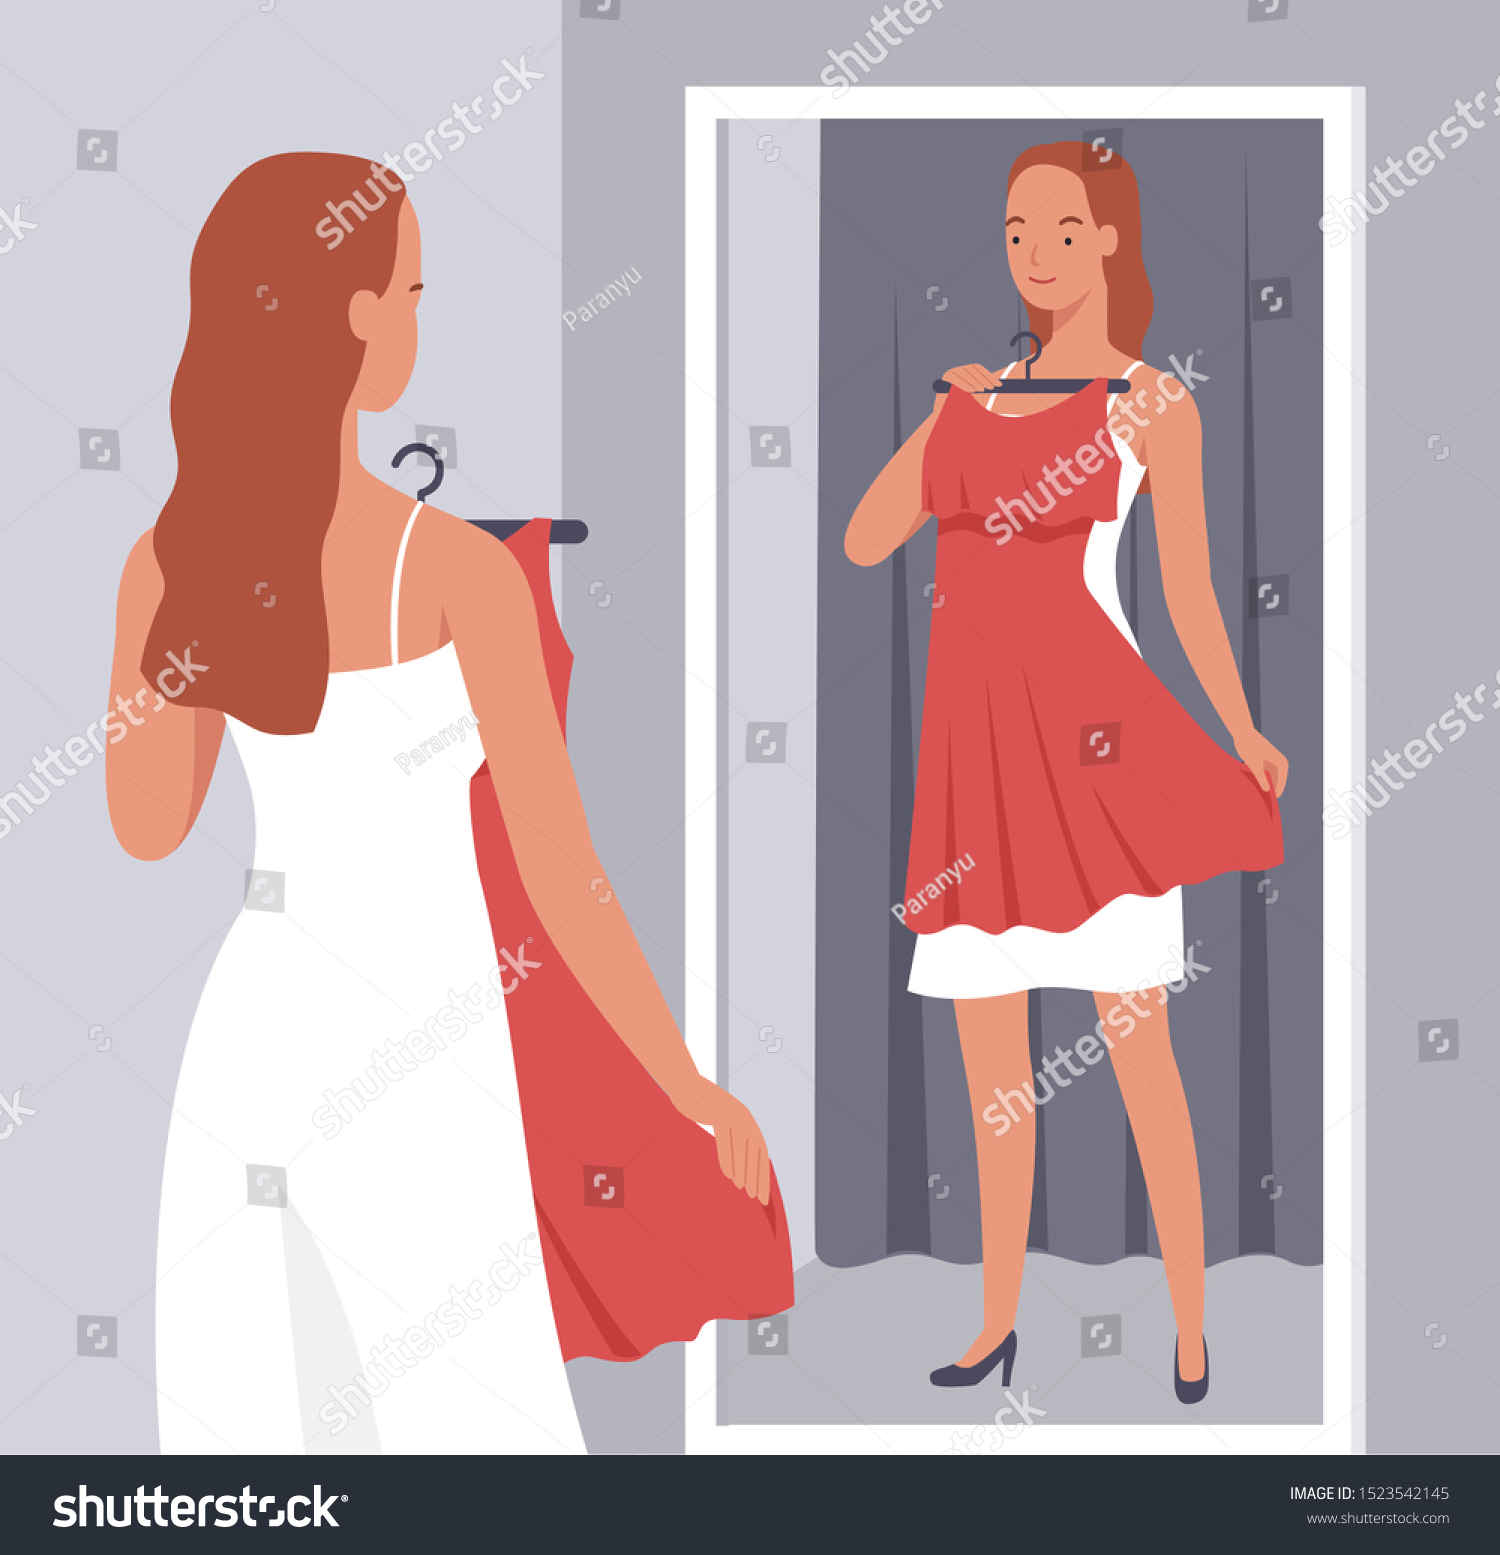 Соблазнительная рыжая девушка примеряет одежду перед зеркалом